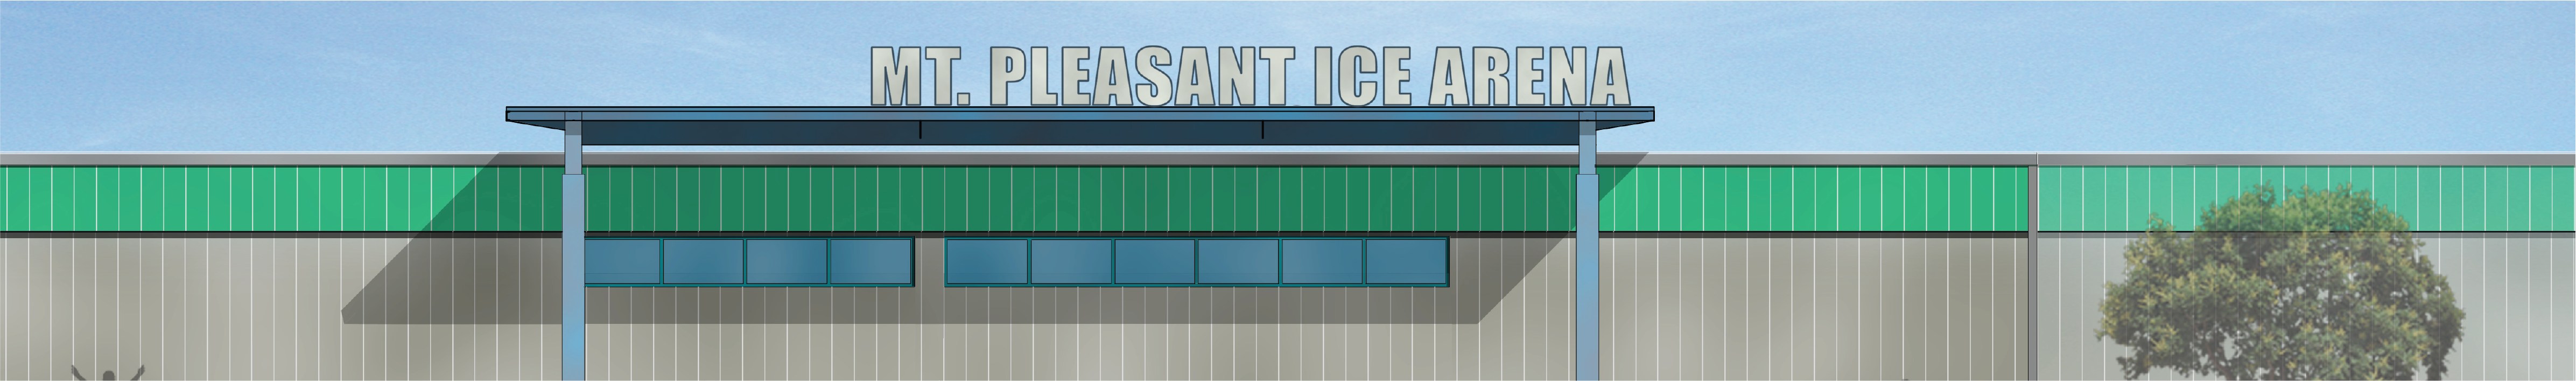 Mount Pleasant Ice Arena